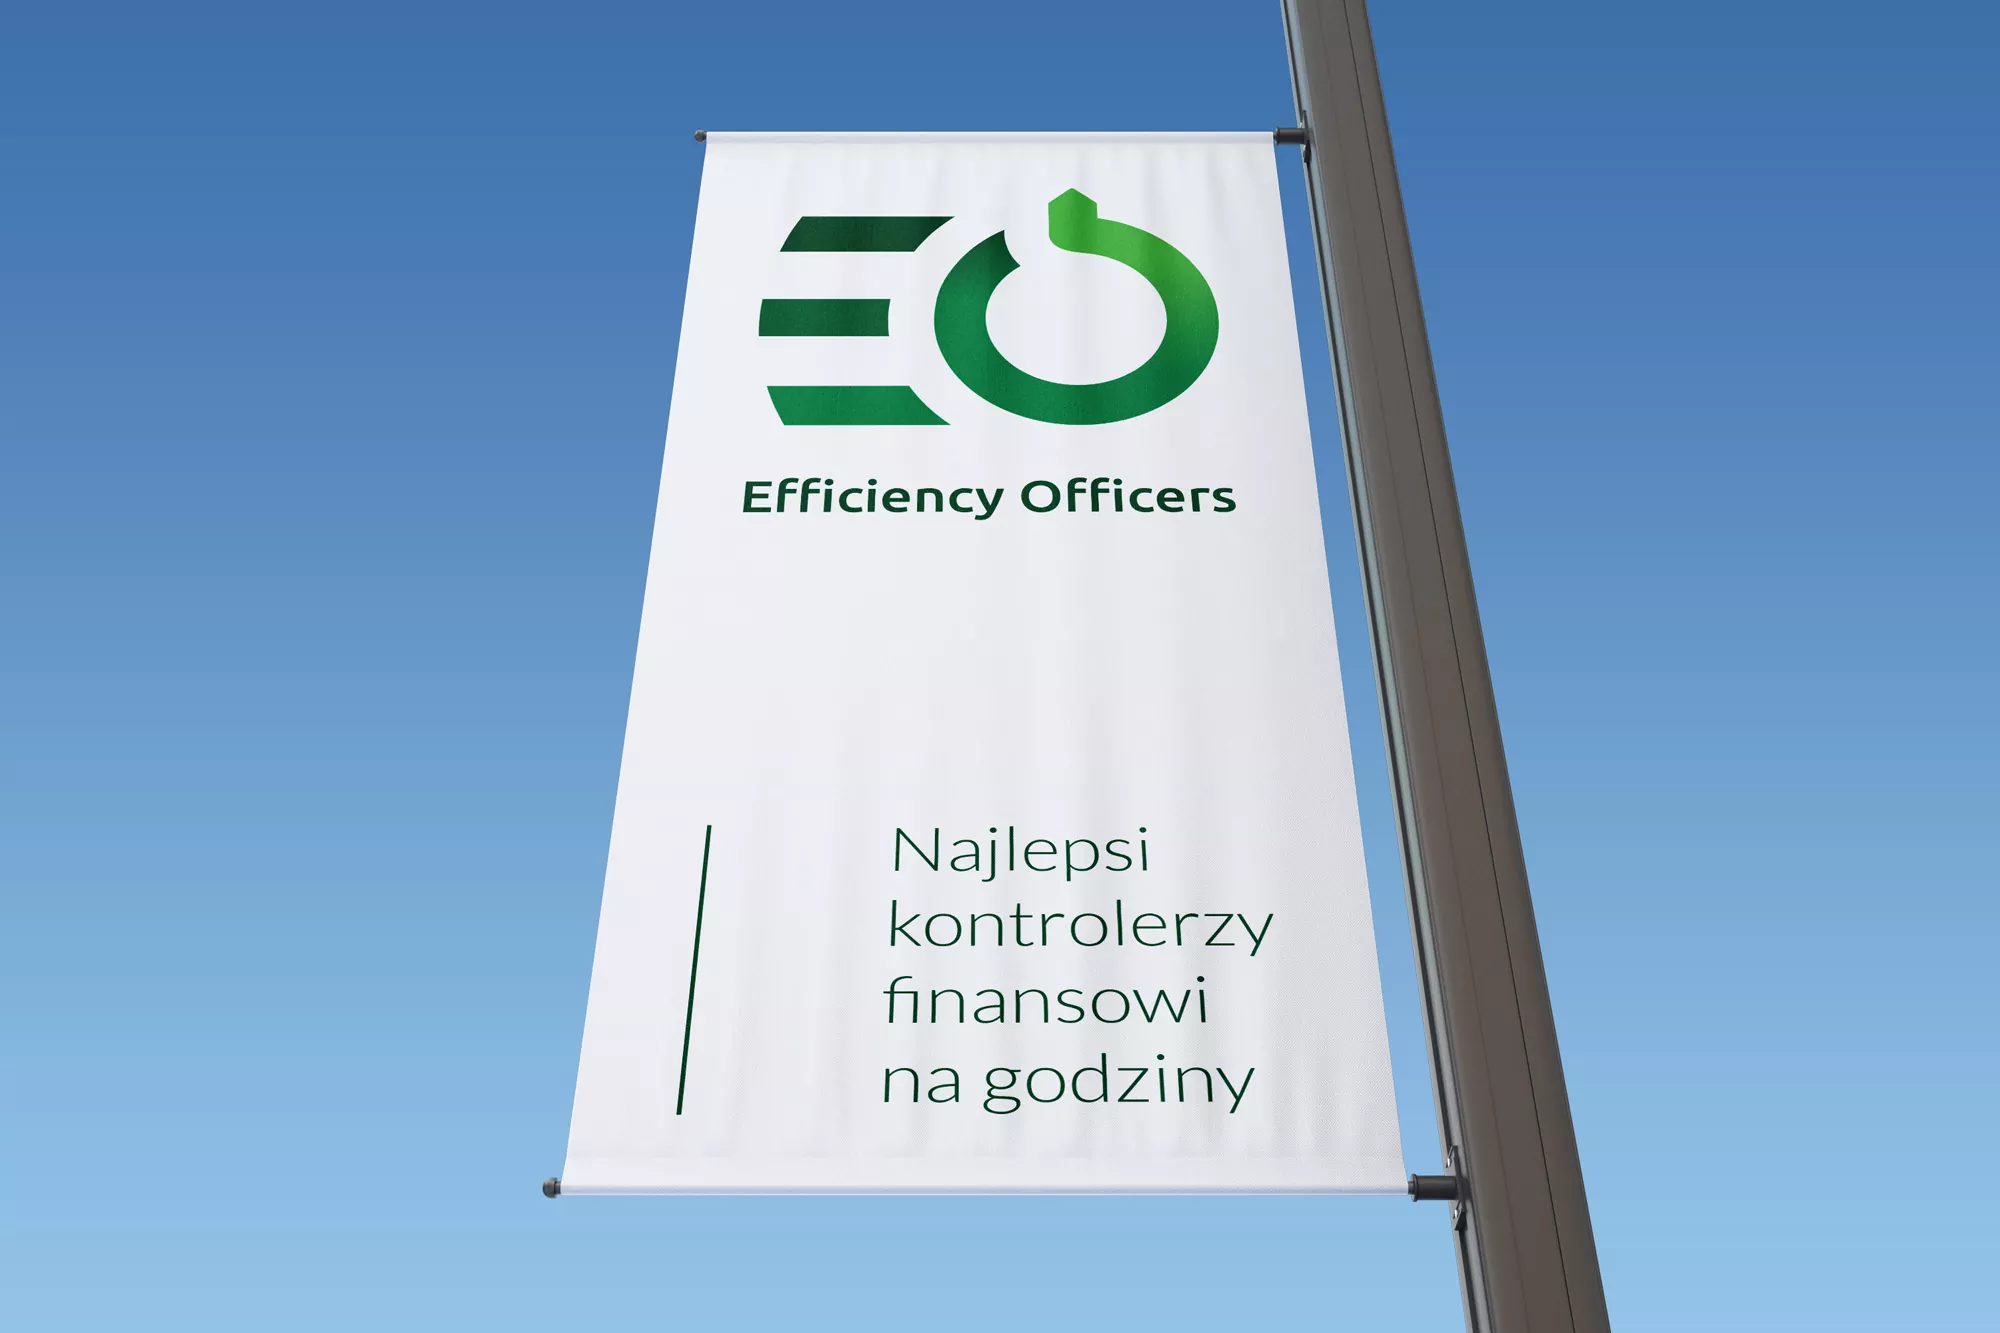 Efficiency Officers identyfikacja wizualna - projekt logo, wizualizacja na fladze